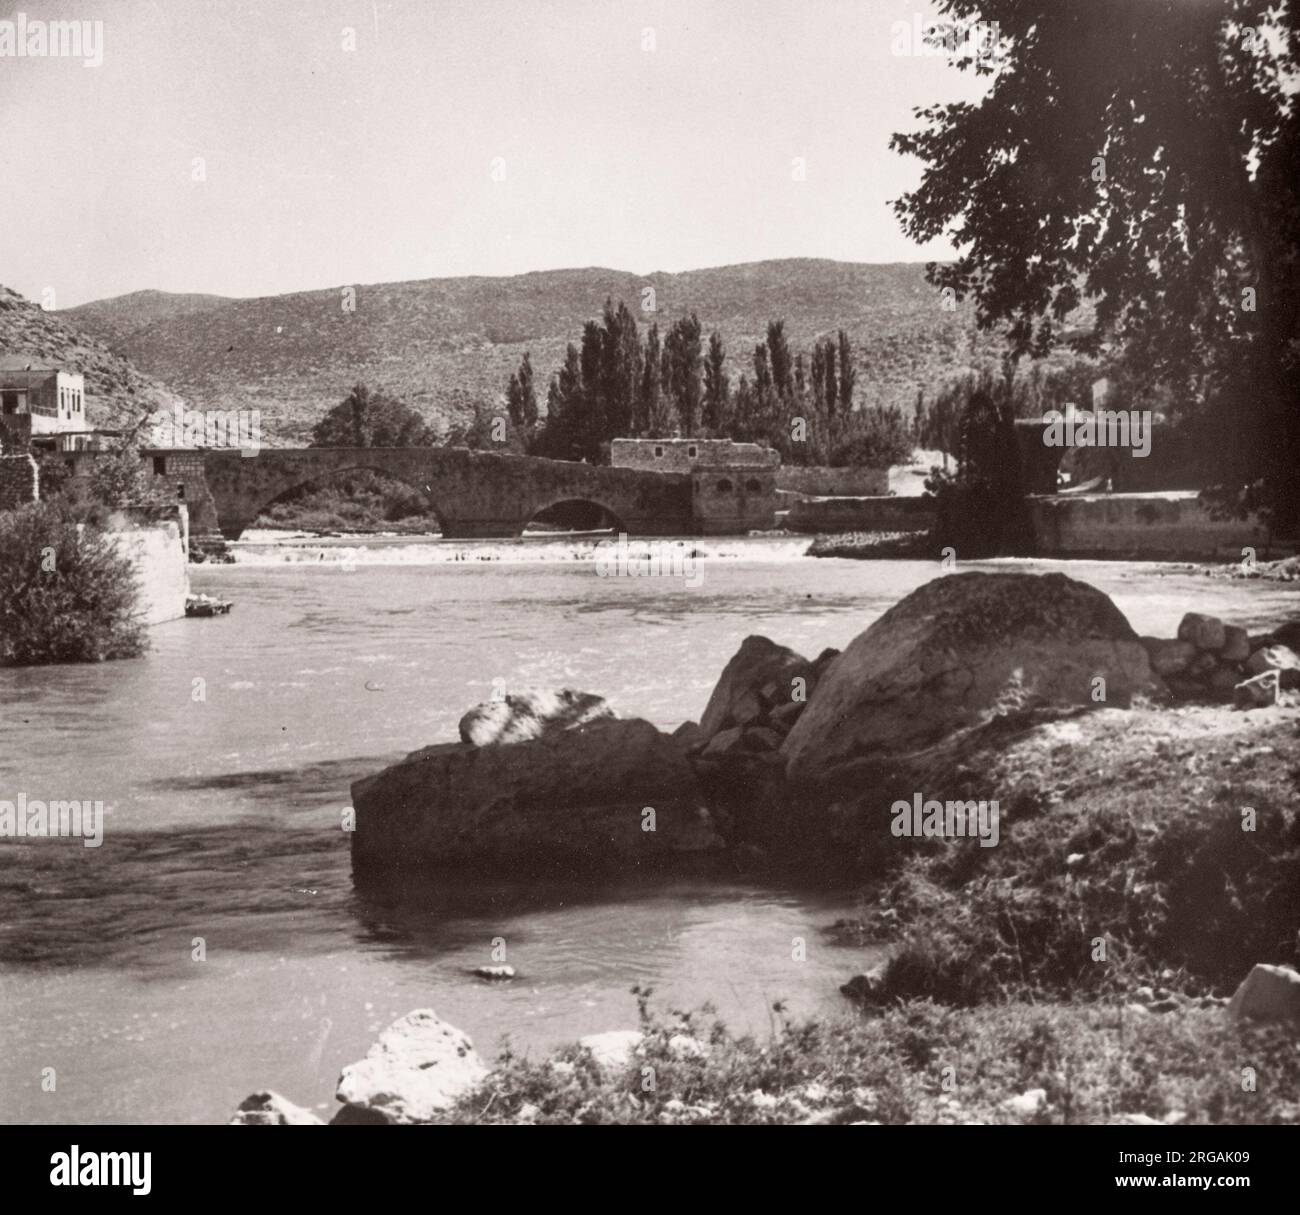 1843 - Syrie - Darkouch ou Darkush sur la rivière Orontes Photographie d'un officier de recrutement de l'armée britannique en poste en Afrique de l'est et au Moyen-Orient pendant la Seconde Guerre mondiale Banque D'Images